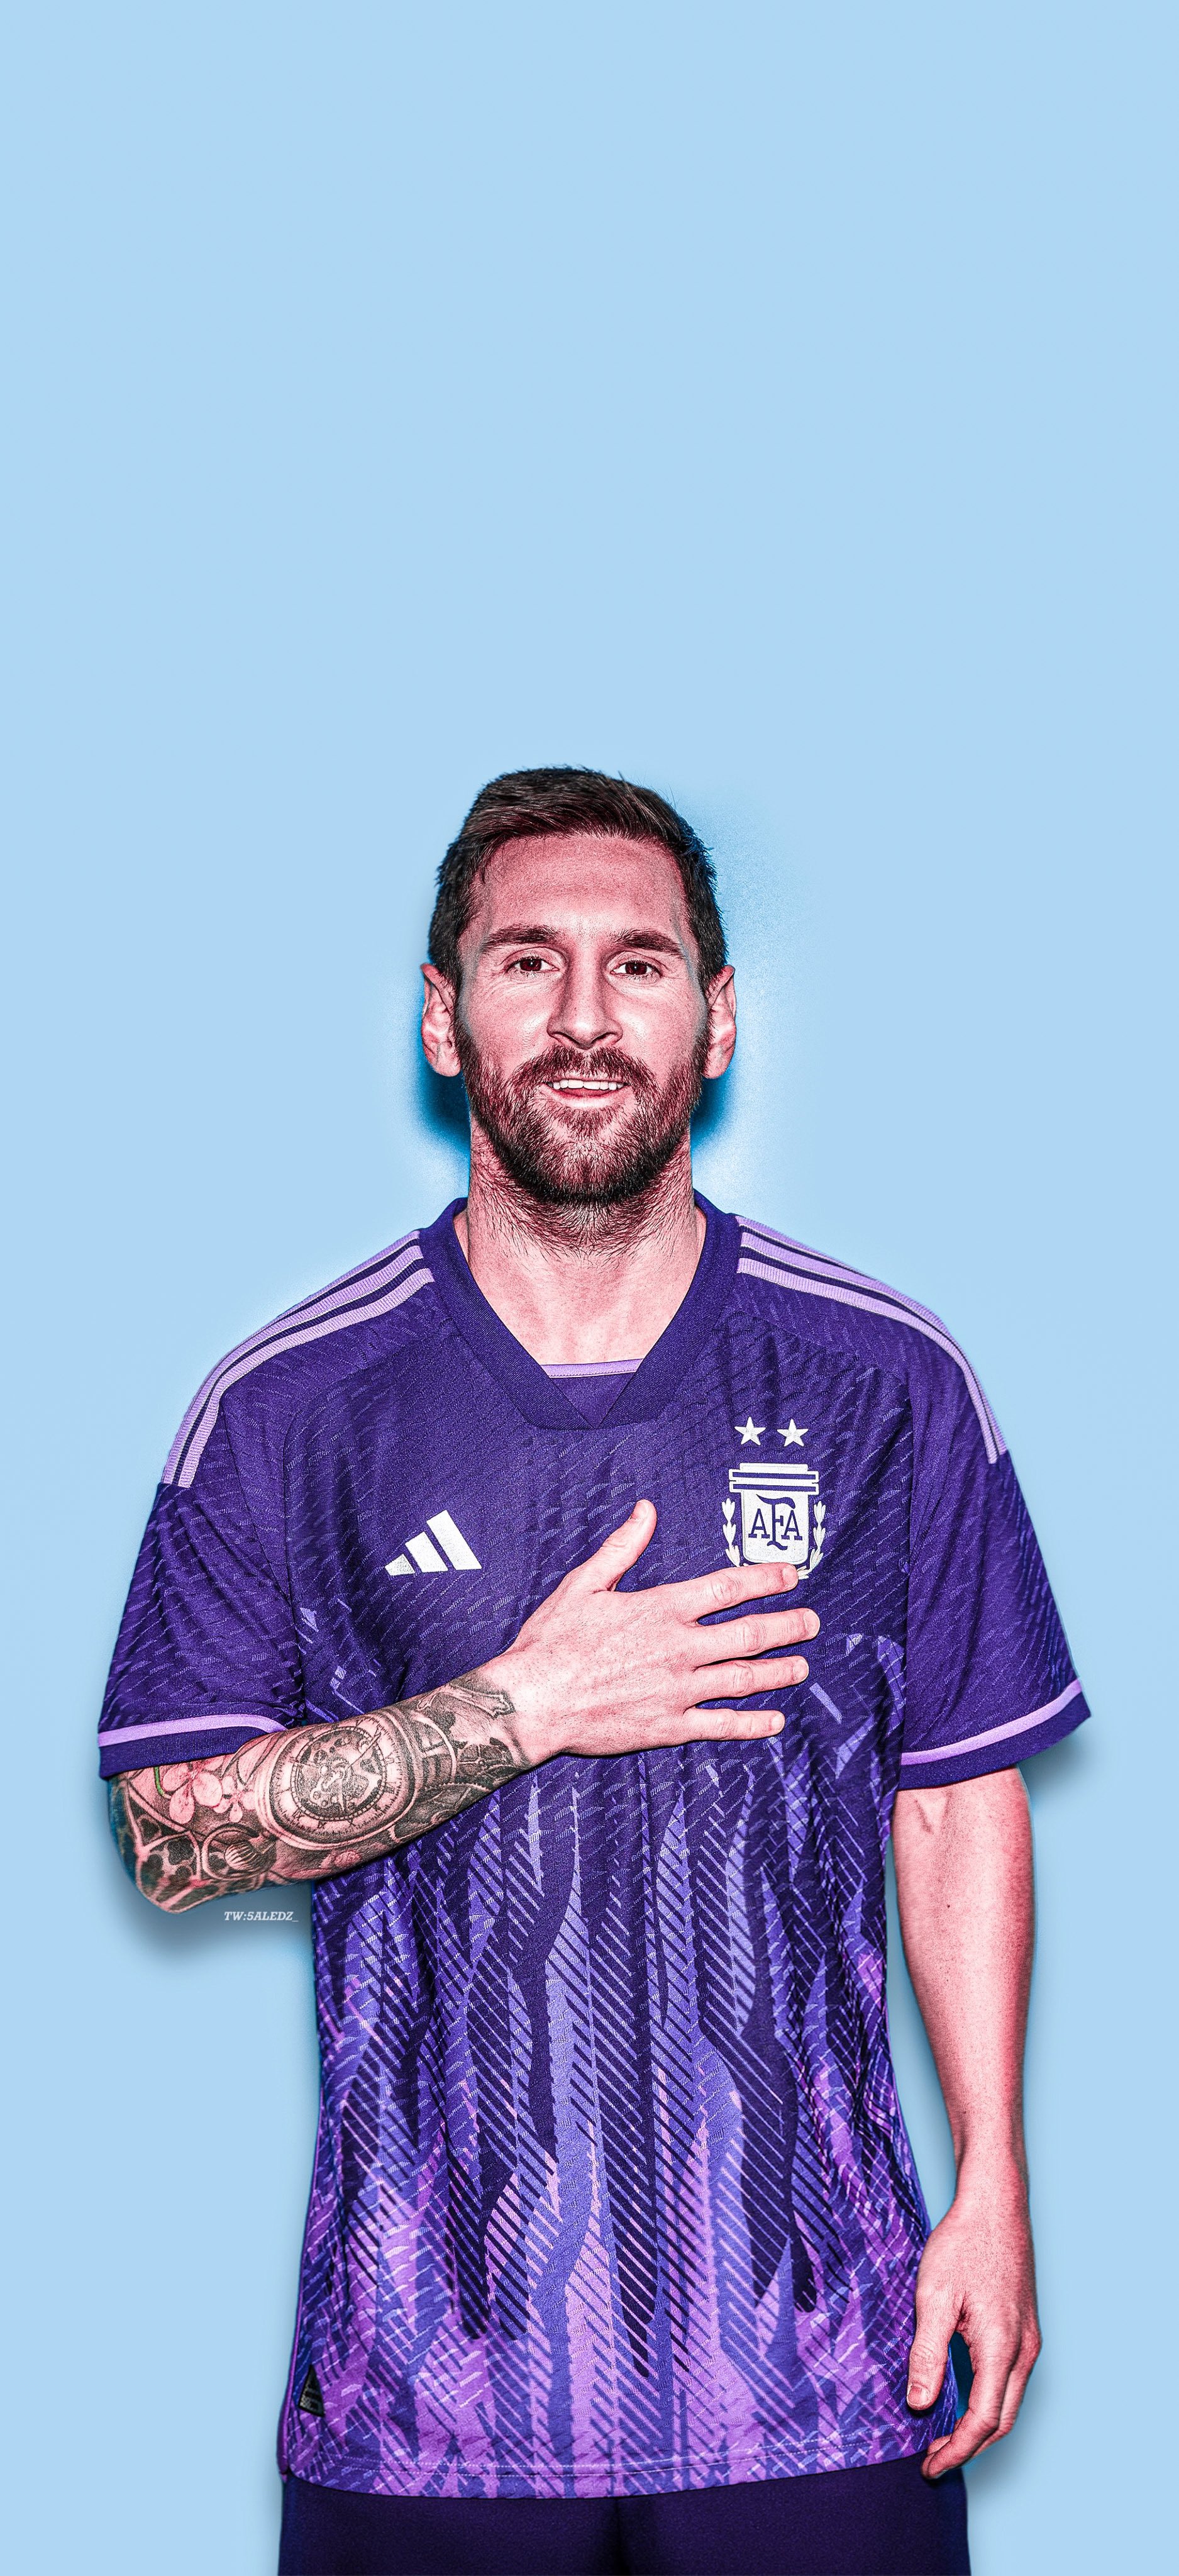 Đứng dậy và cổ vũ cho đội tuyển Argentina trong chiếc áo Jersey Messi nổi tiếng này. Hãy cùng hòa mình vào không khí của bóng đá, bằng những hình ảnh tuyệt đẹp về những người hùng trên sân cỏ.